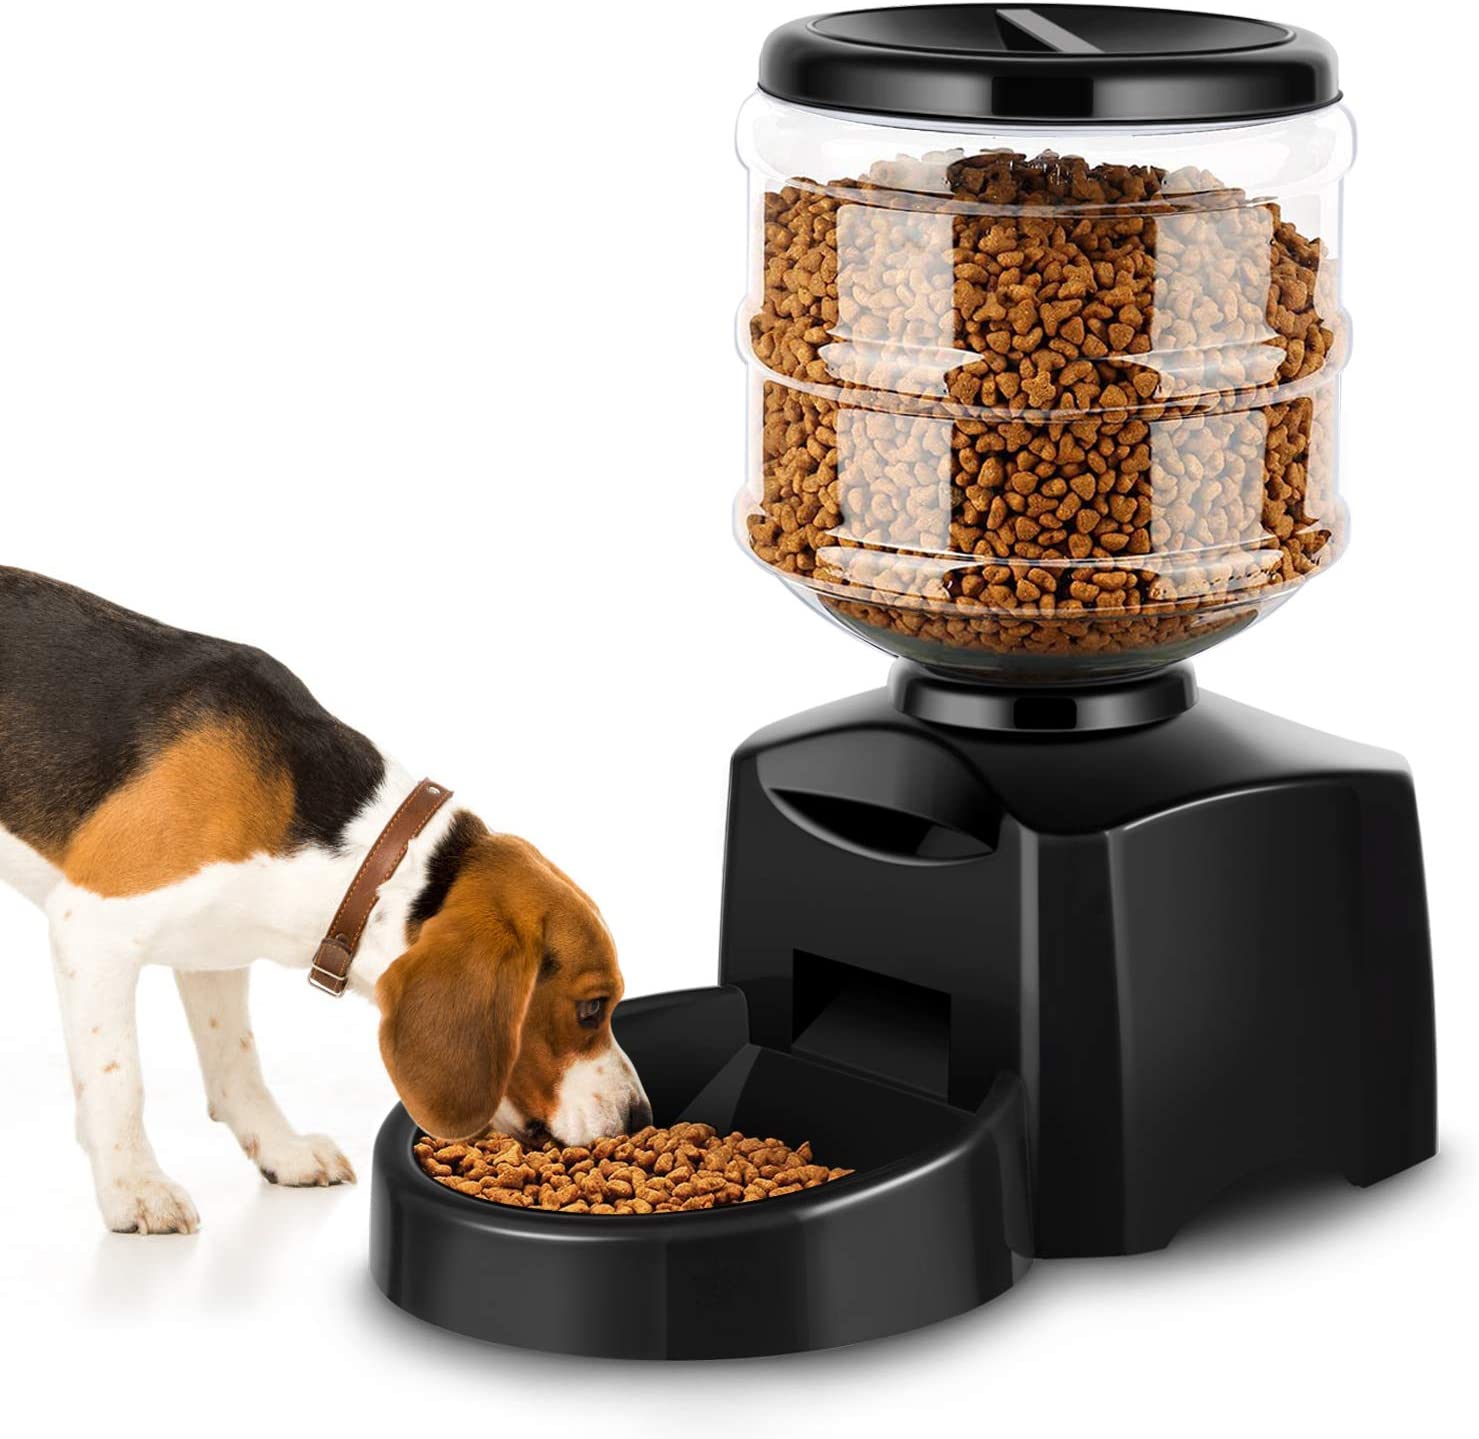  Amzdeal Comedero Automático Gatos y Perros 5.5L, Alimentador de Mascotas con Pantalla LCD, Dispensador con Función de Grabación 